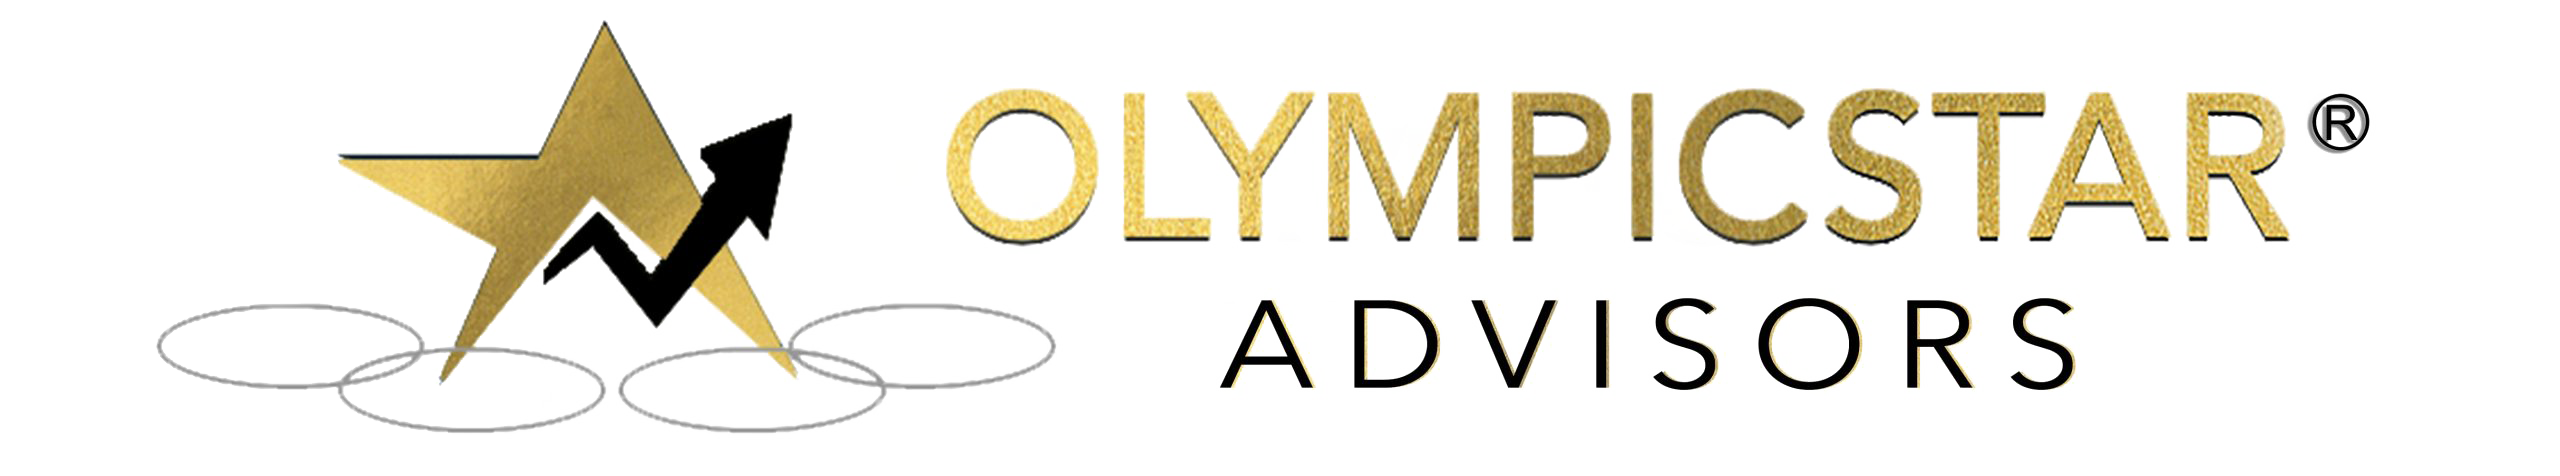 OlympicStar Advisors